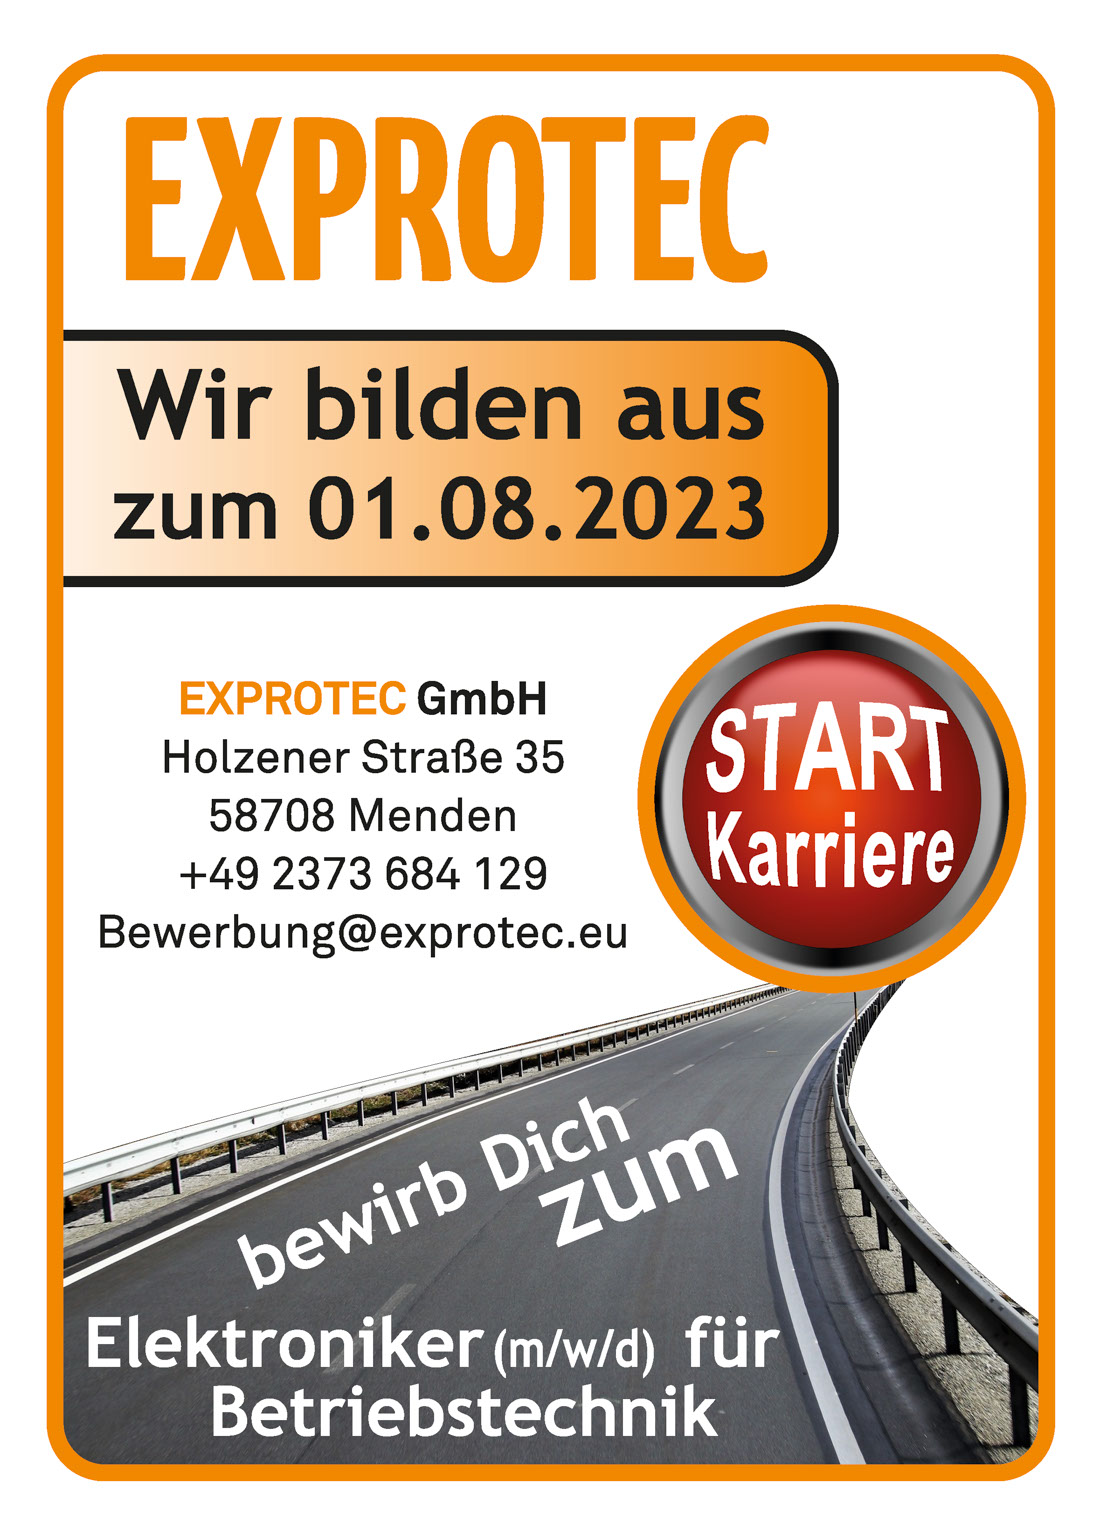 EXPROTEC GmbH